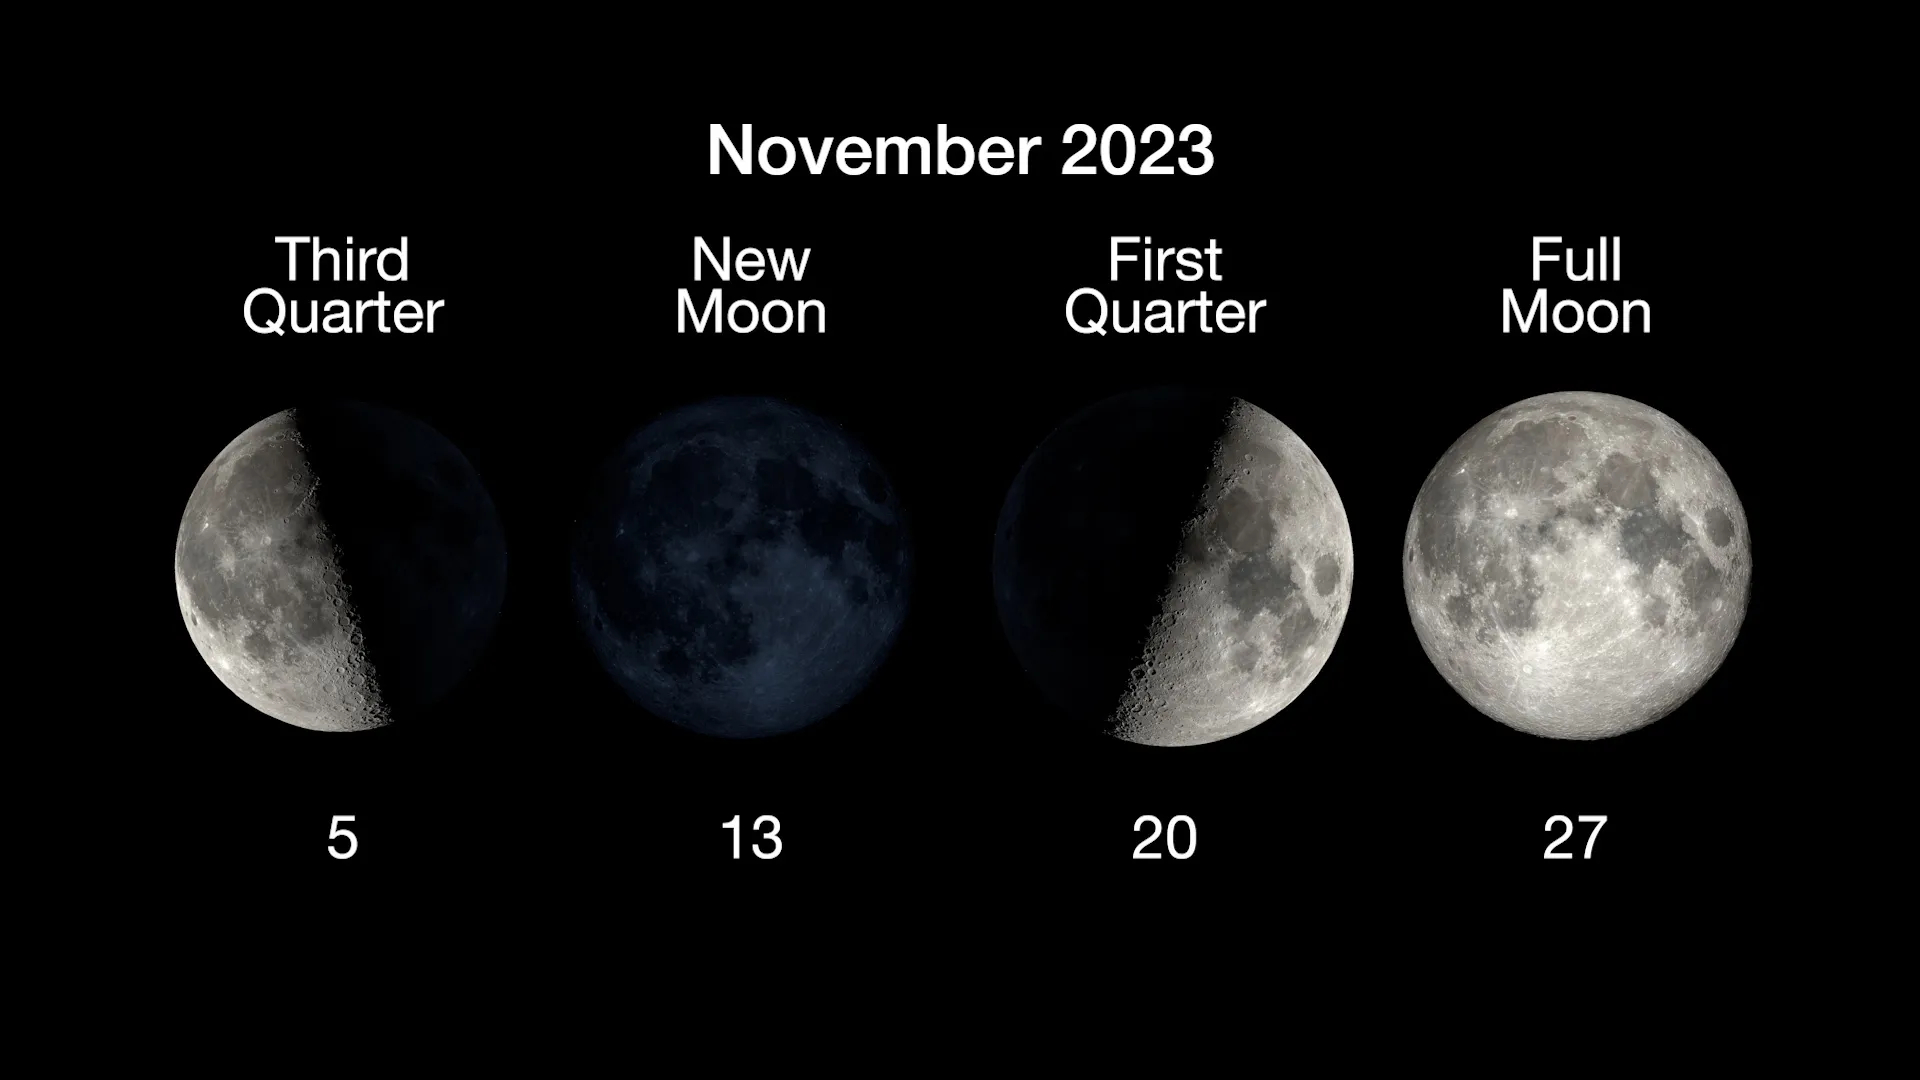 1st quarter moon phase